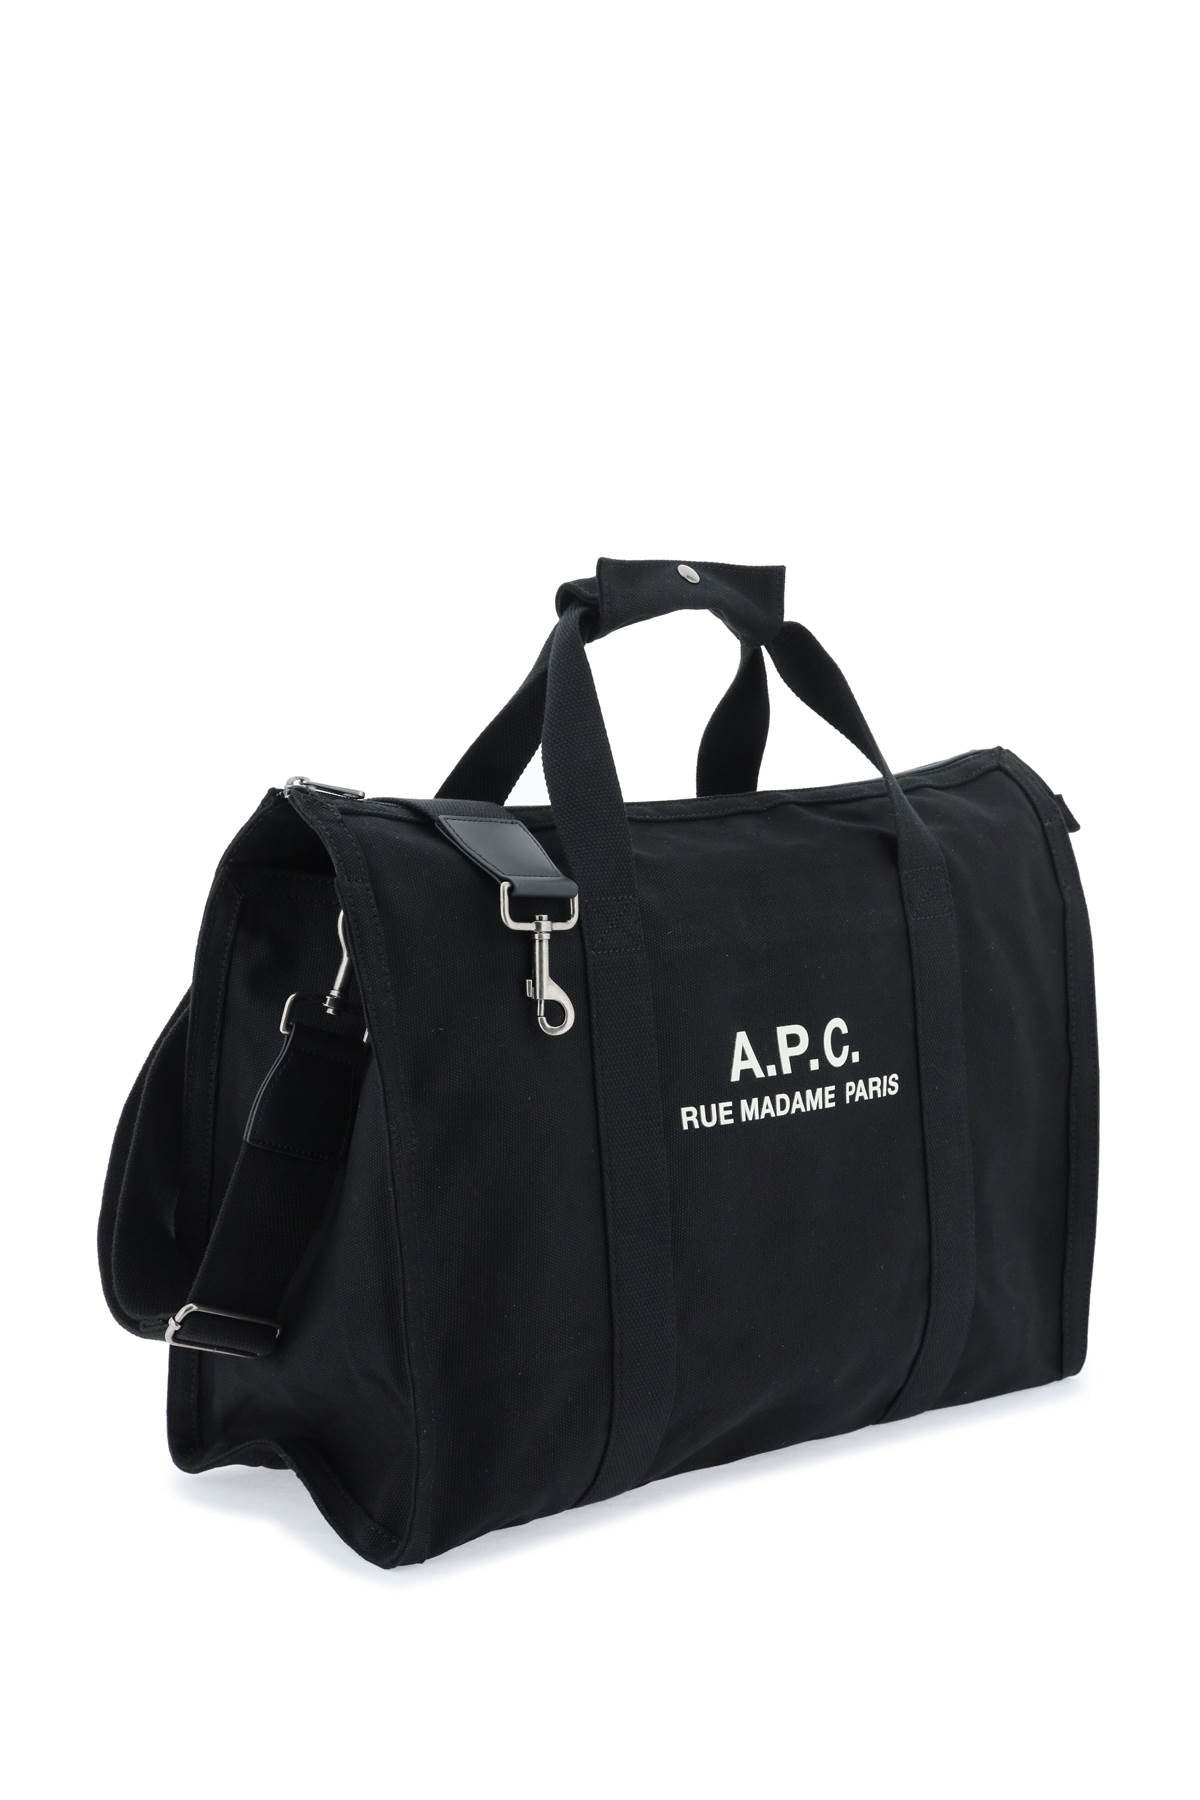 A.P.C. Récupération Tote Bag   Black